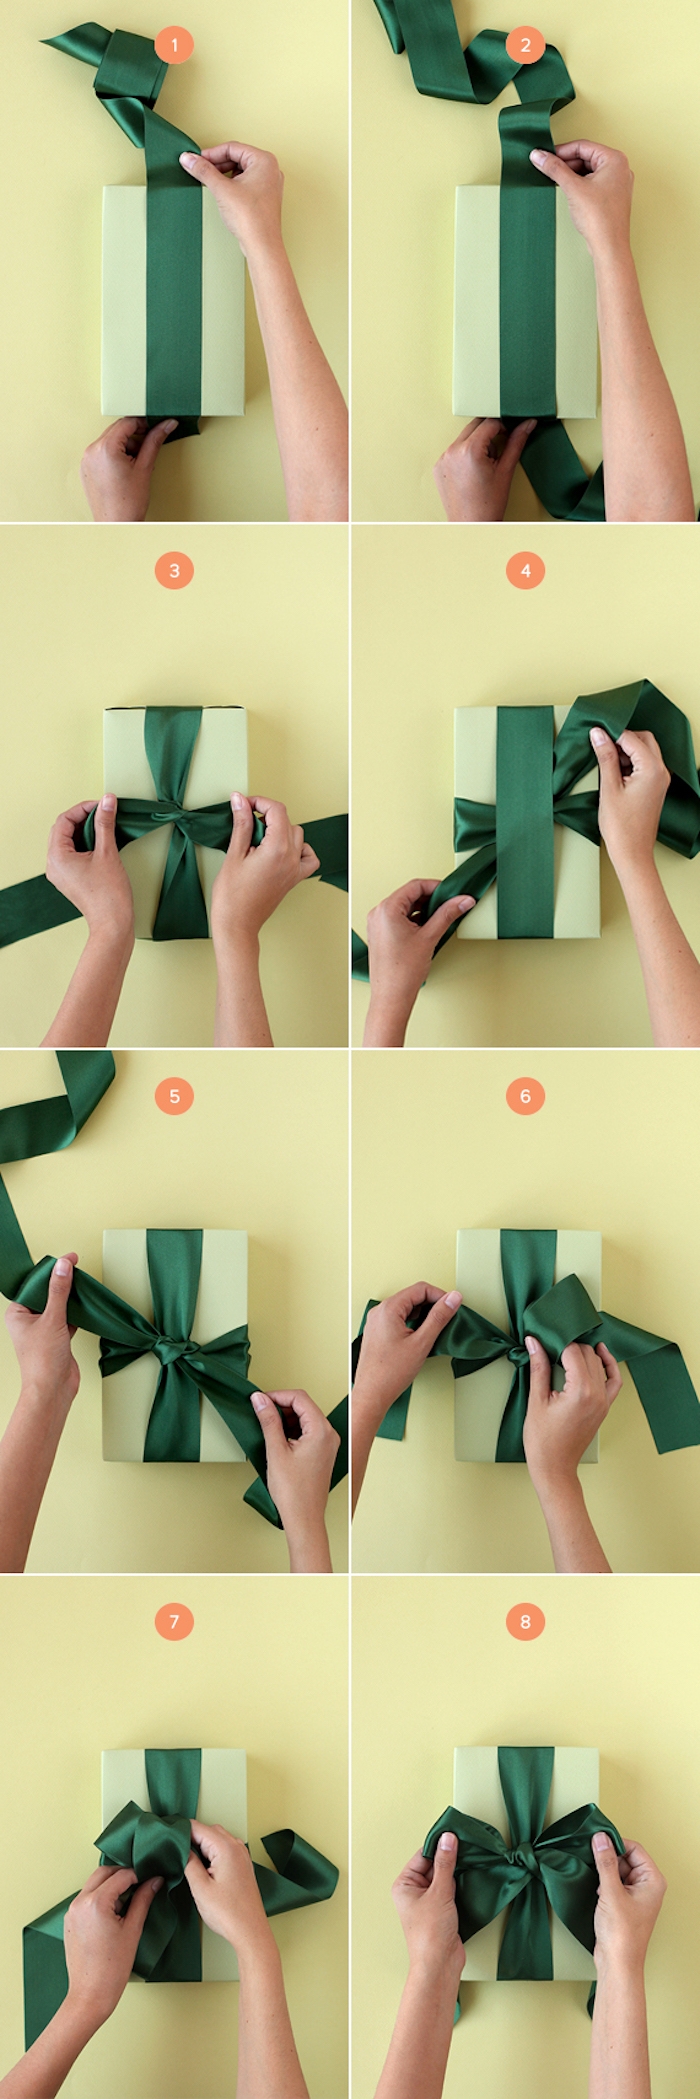 tuto paquet cadeau, idée comment faire un noeud de ruban sur le dessus, el couvercle d une boite verte, étape par étape